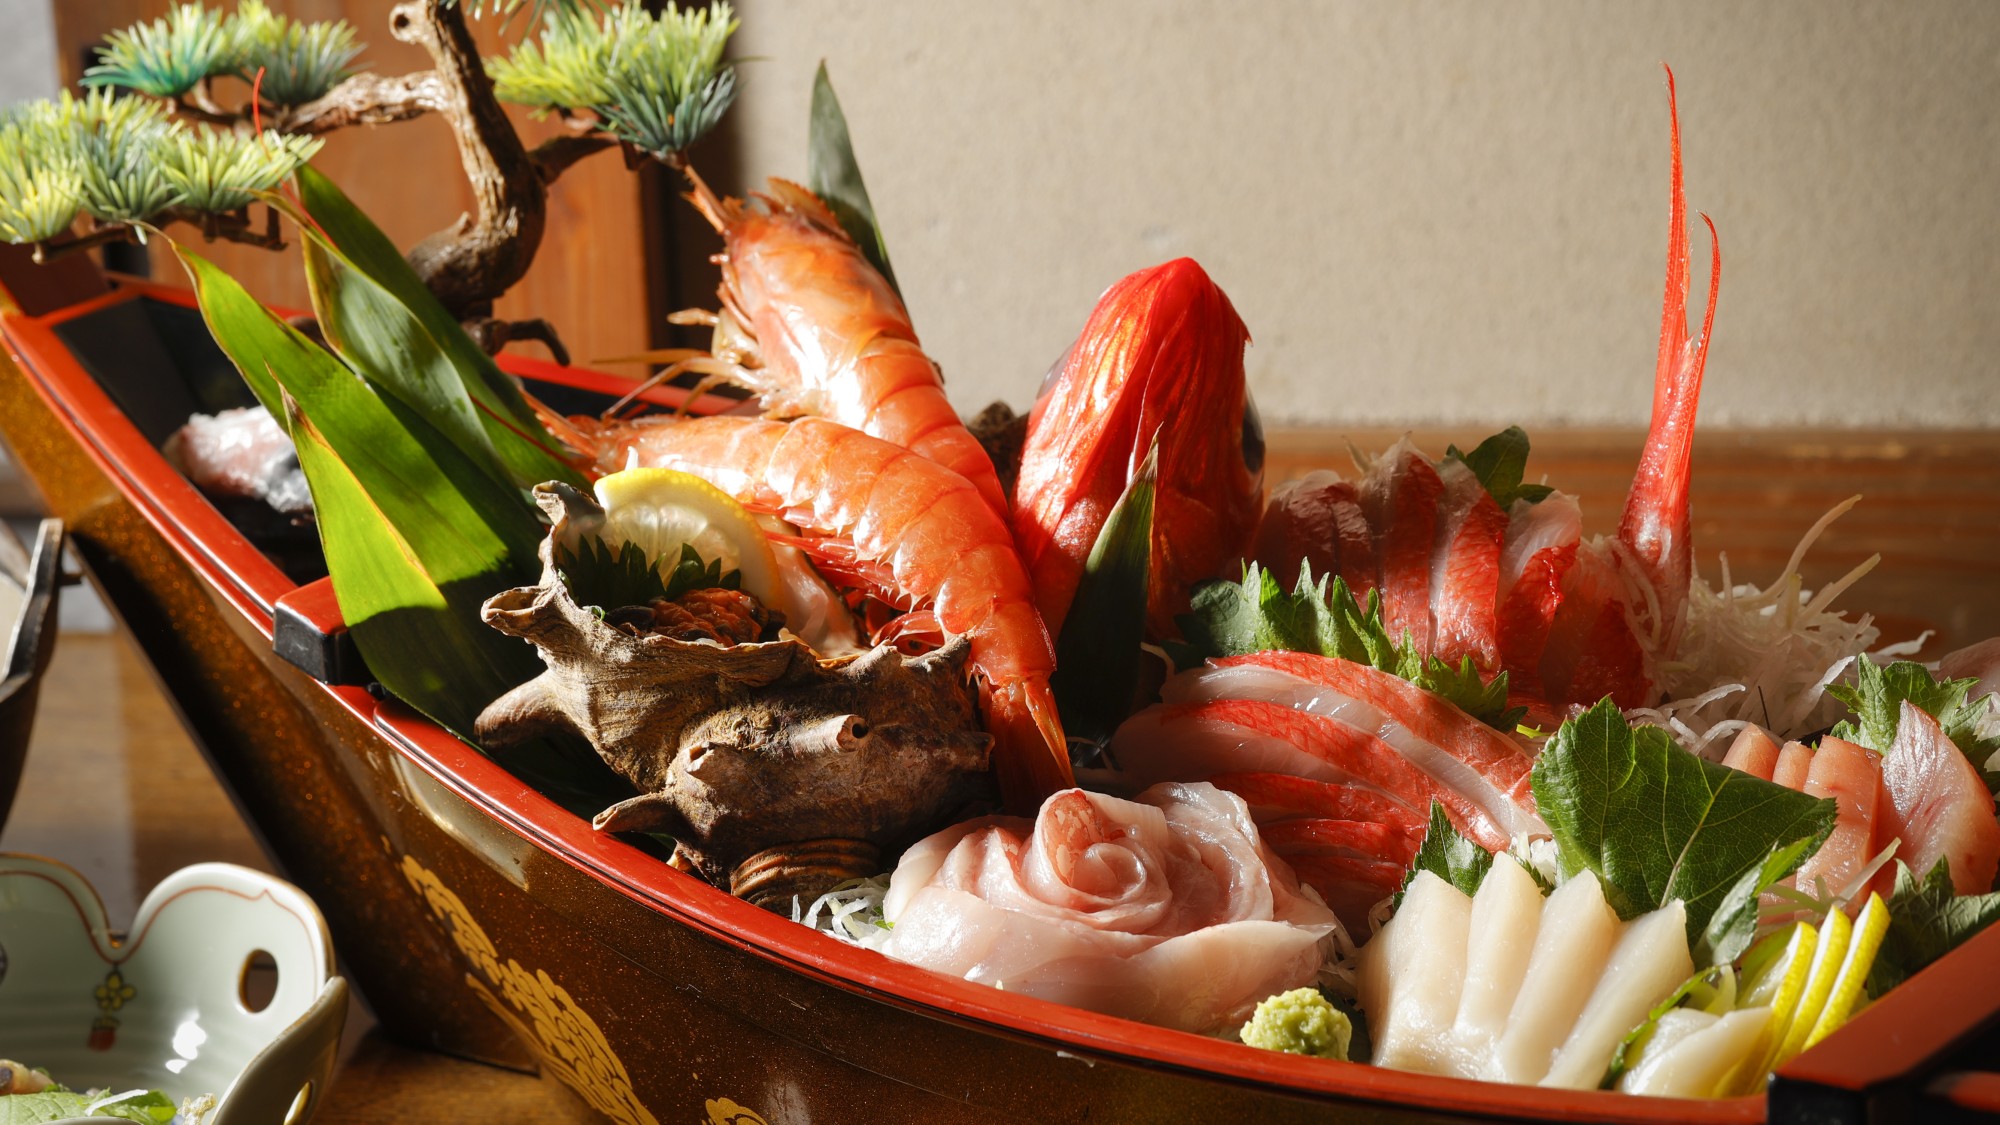 【舟盛】伊豆で獲れた新鮮な魚介類を中心とした豪華絢爛な舟盛